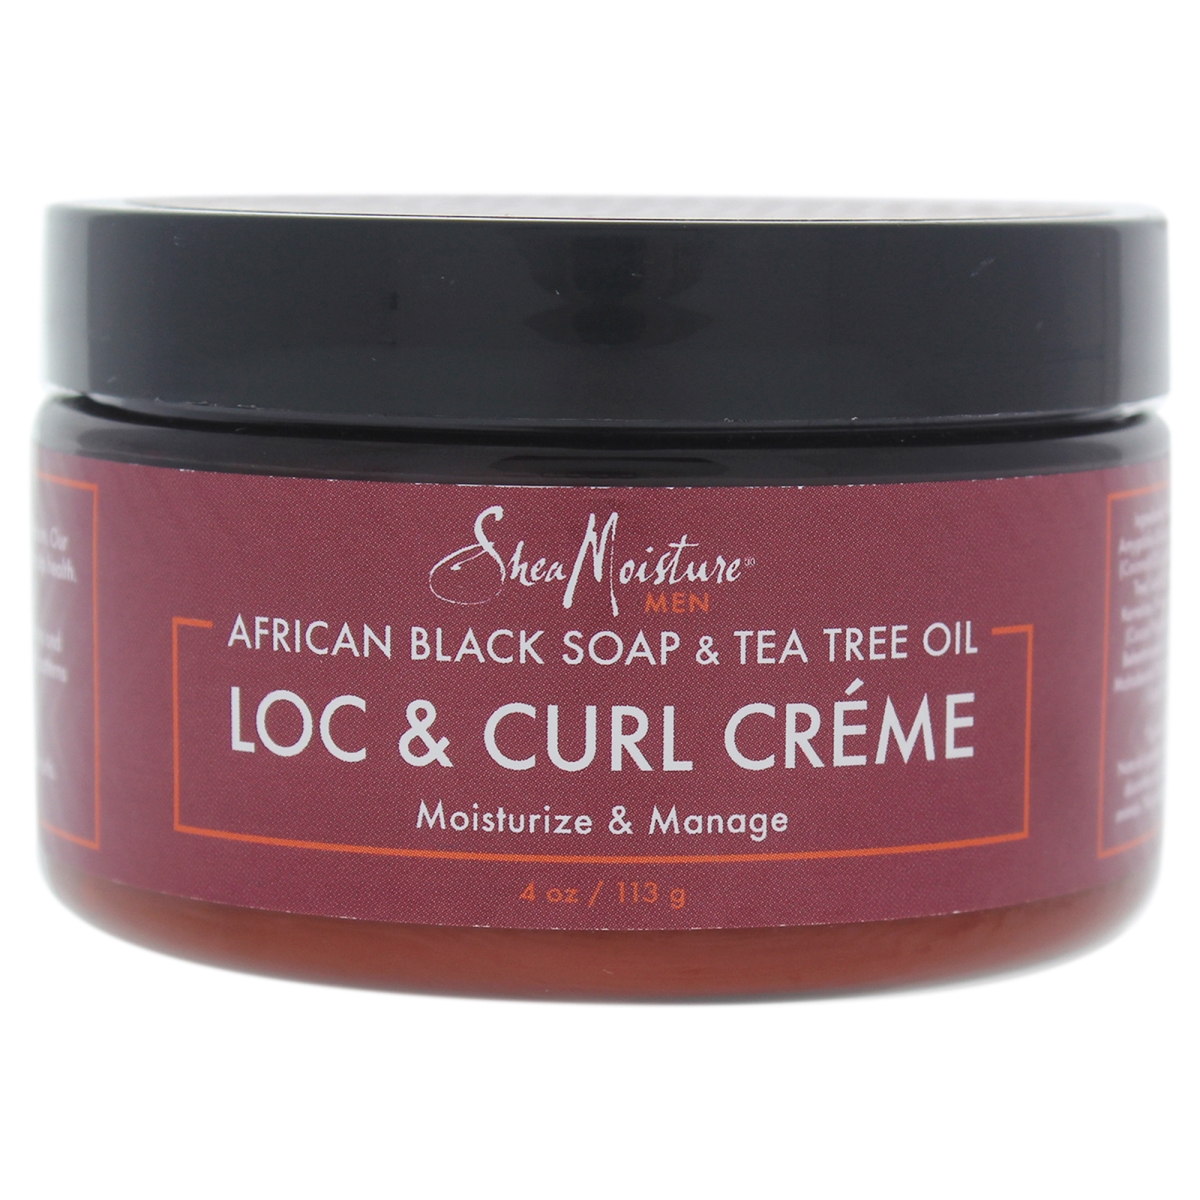 I0087786 African Black Soap & Tea Tree Oil Loc & Curl Cream For Men - 4 Oz